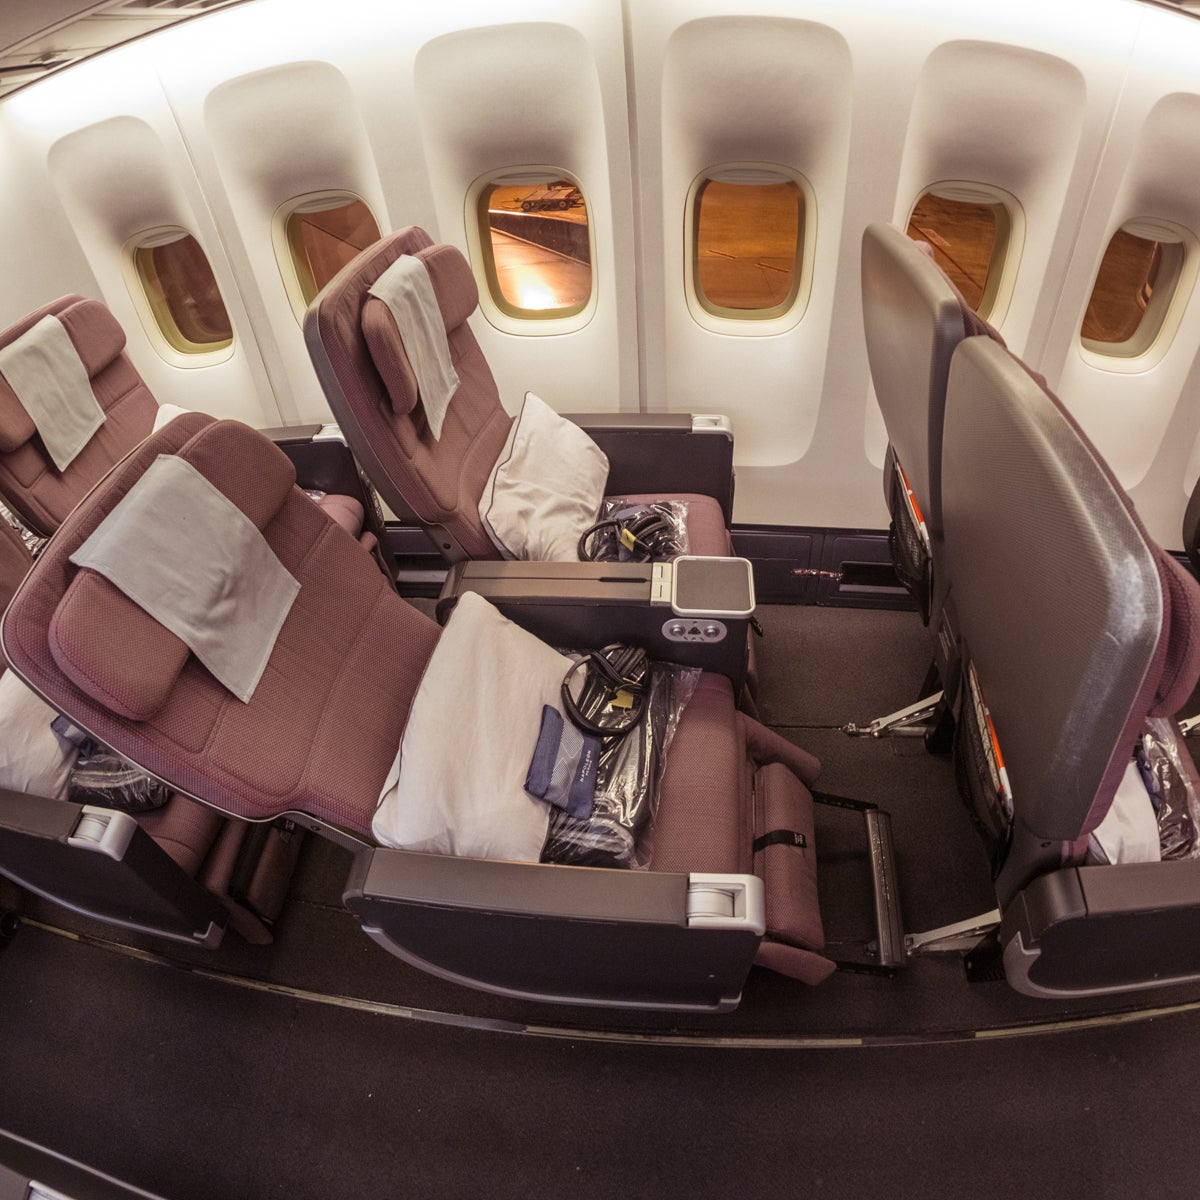 Qantas Boeing 747 Premium Economy Seat Recline